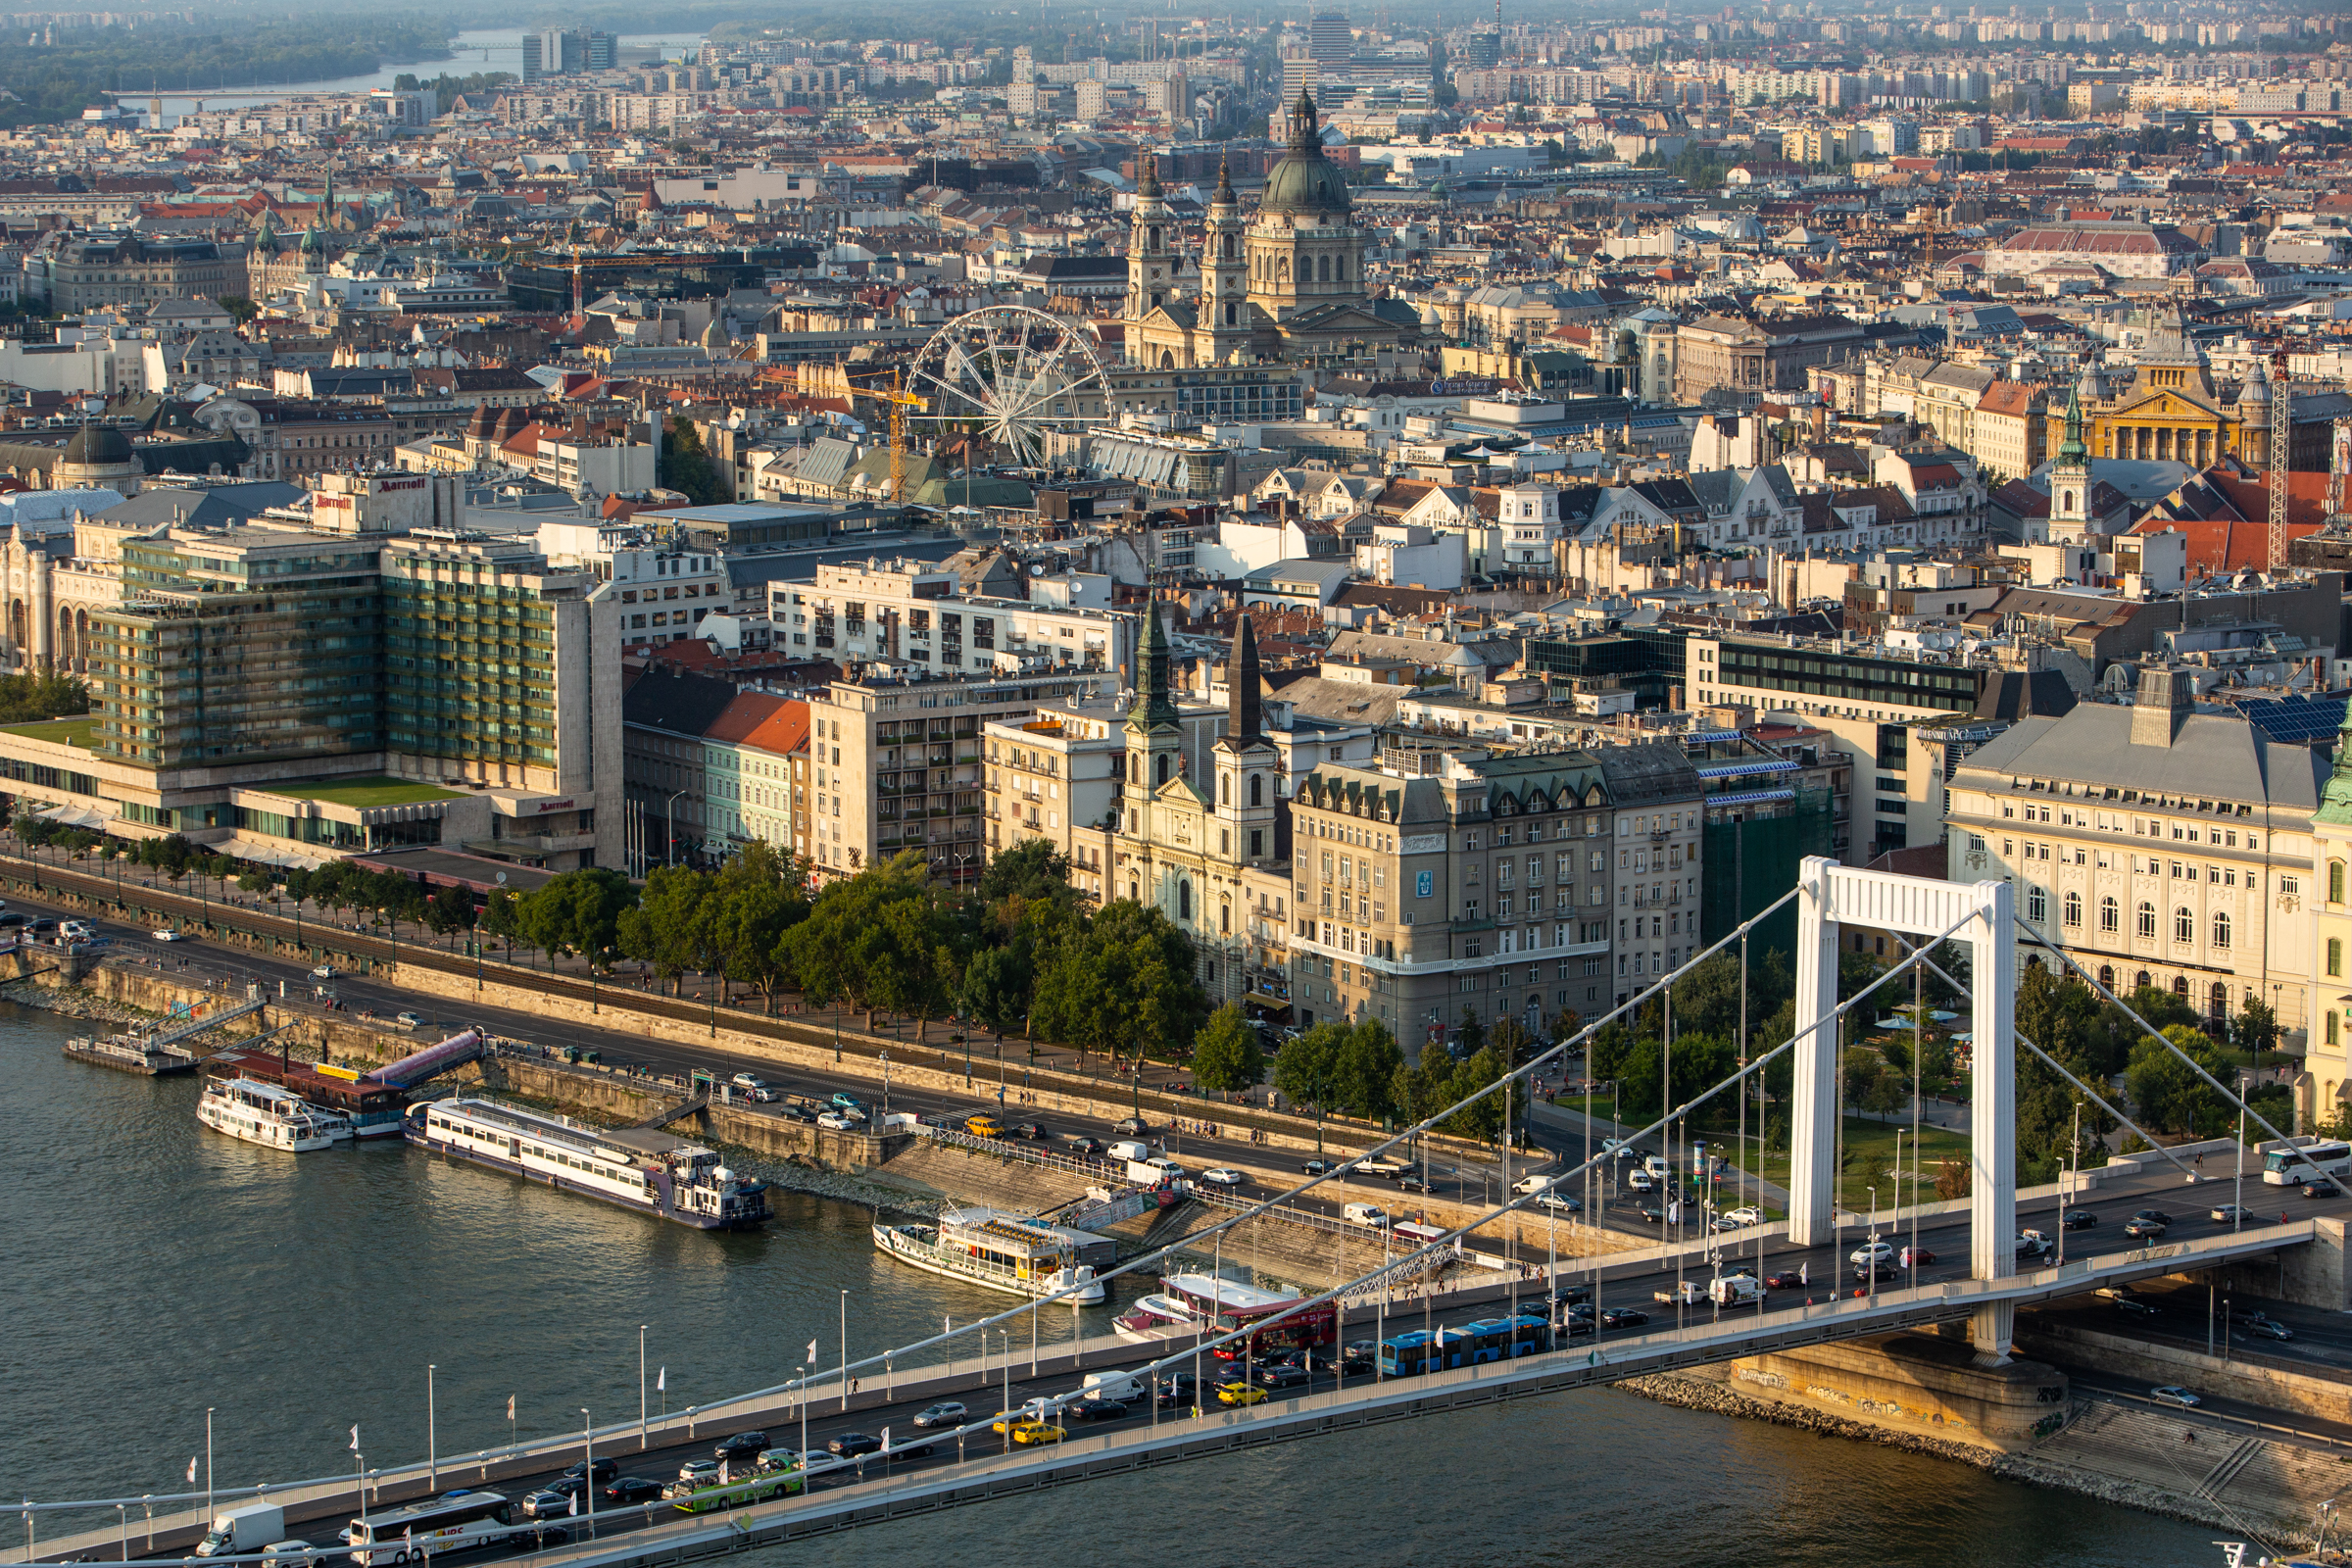 Mennyire ismered Budapestet? – Fővárosismereti kvíz (2. rész)